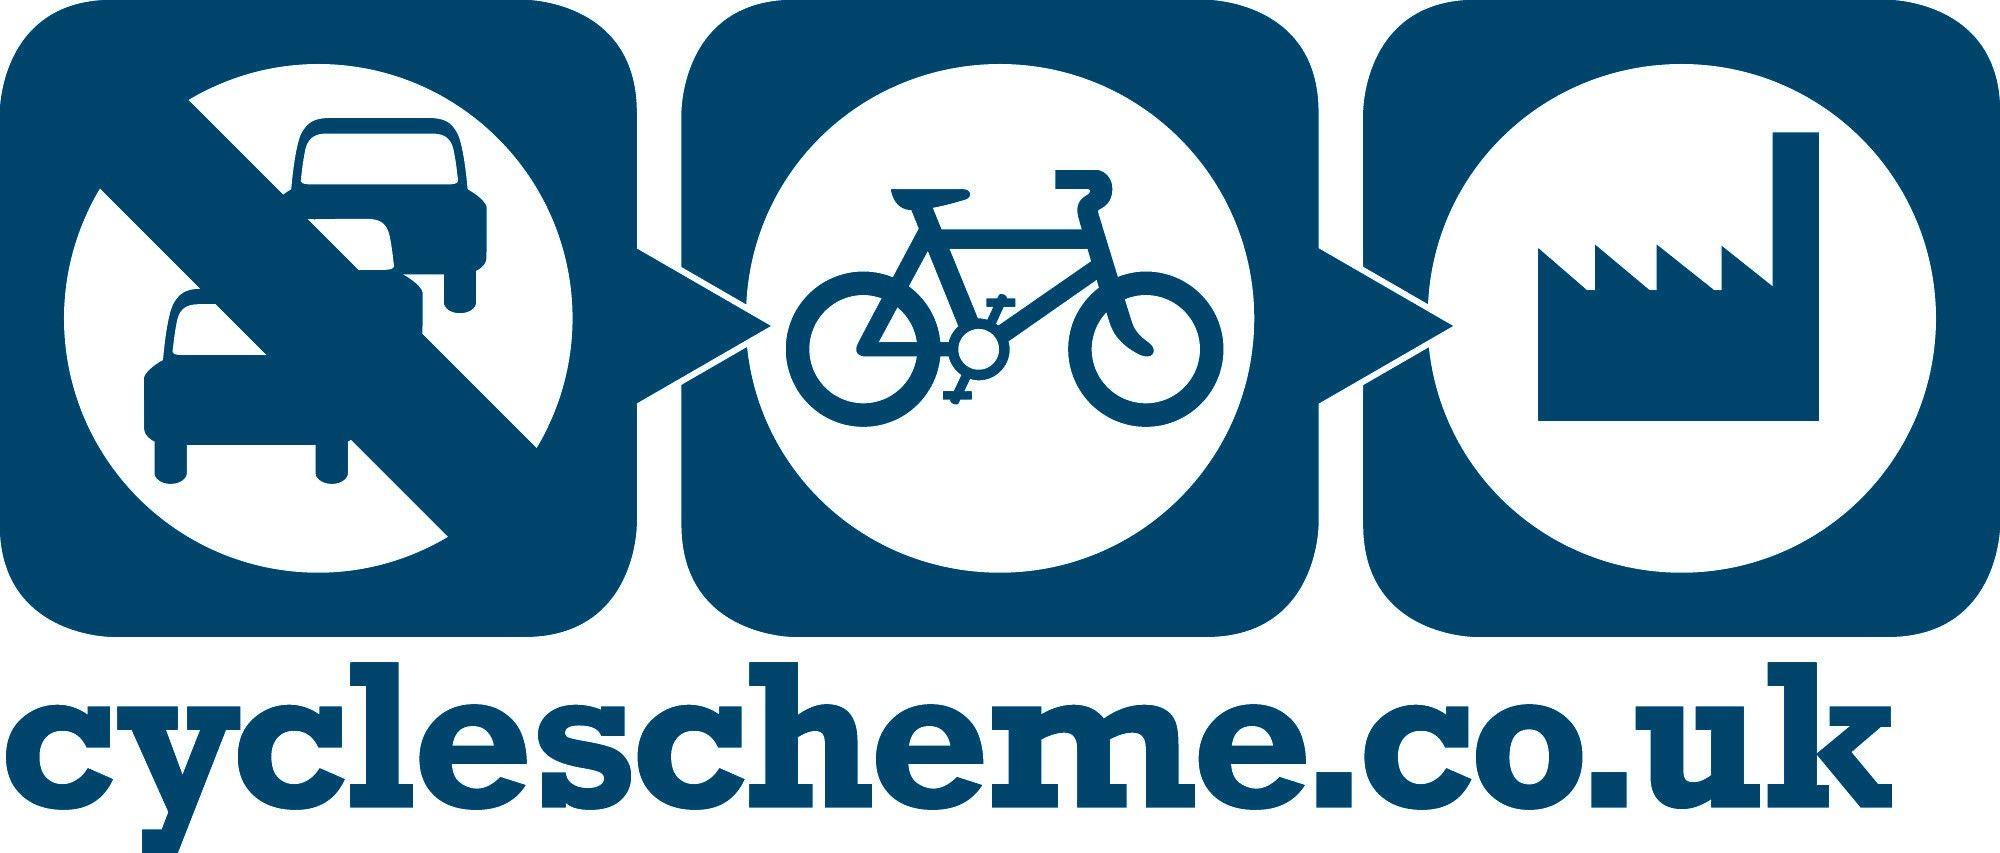 Serious Cycling Bike Shop Logo - CycleScheme and Tax Free Cycling Schemes - Kona Bike Shop UK